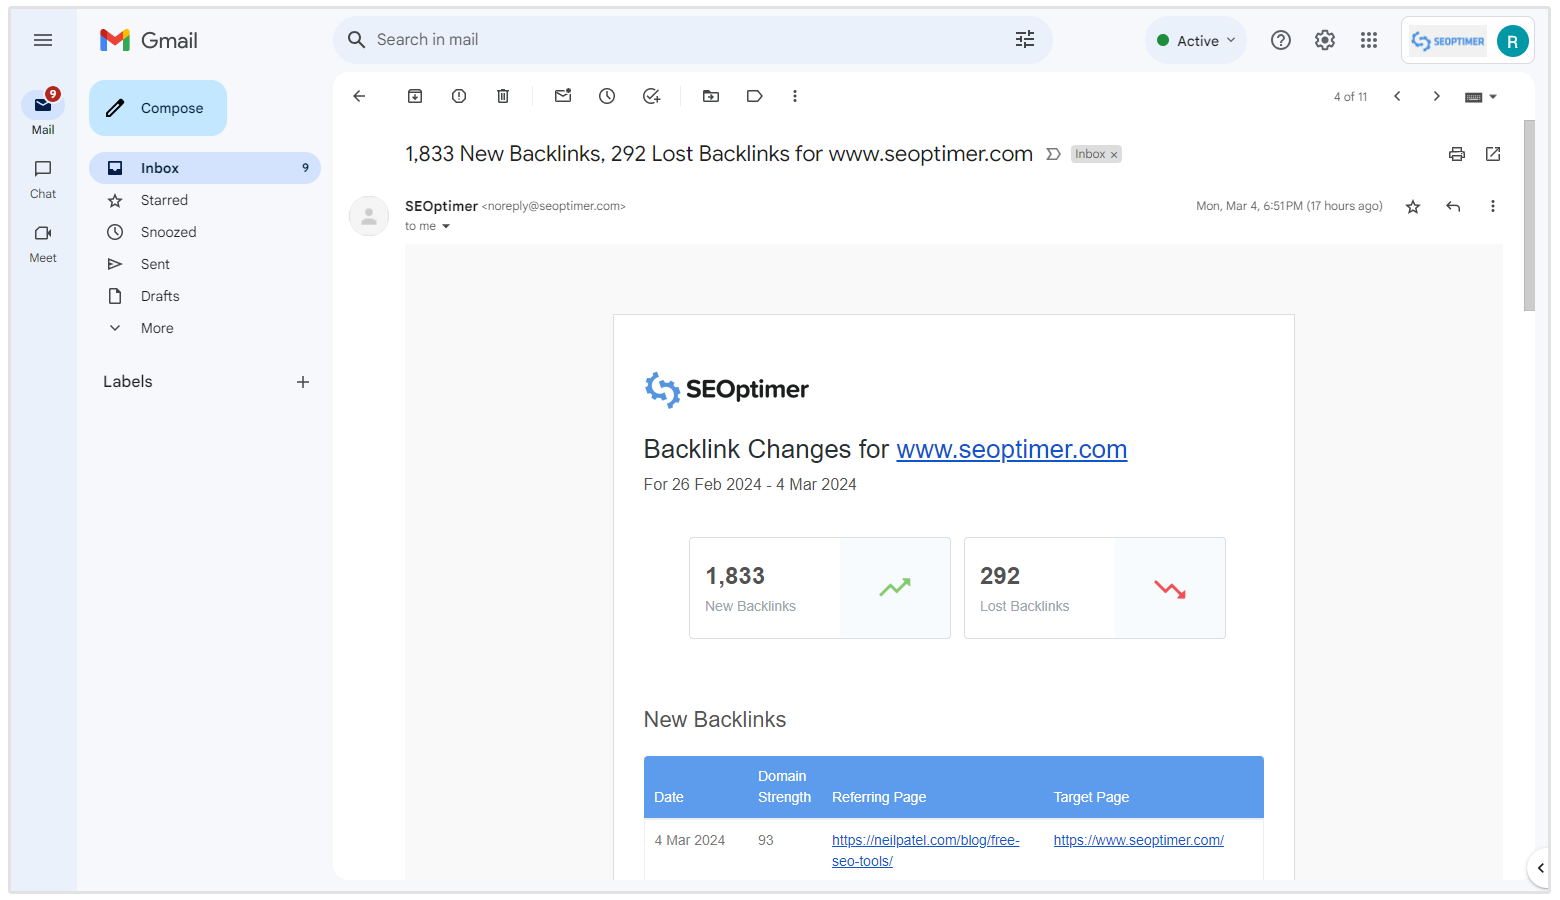 E-Mail-Zusammenfassung der Backlink-Änderungen